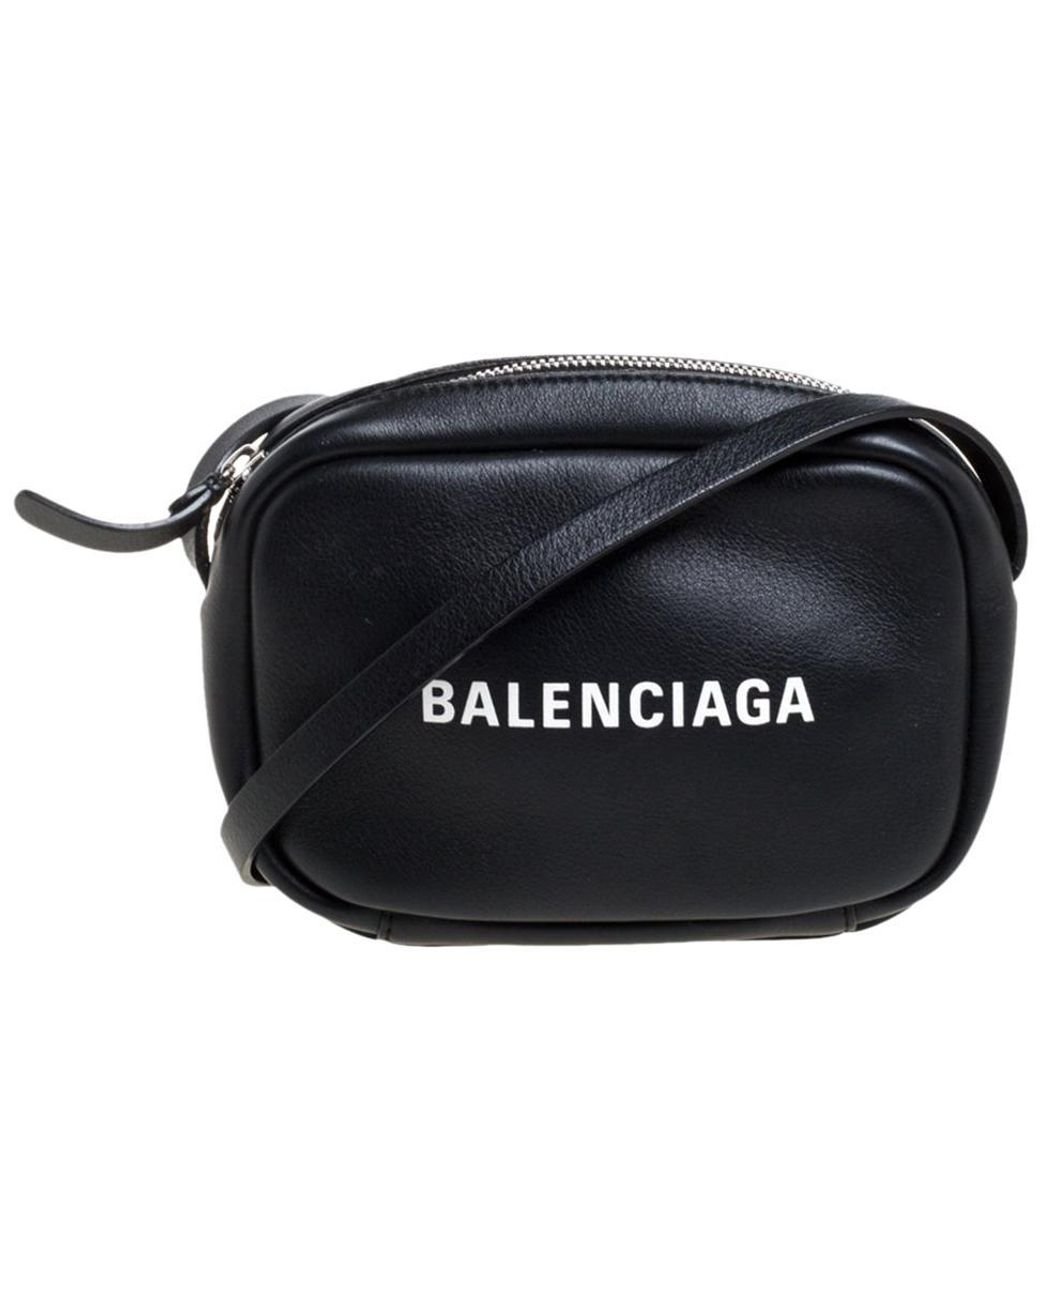 Balenciaga Leather Logo Xs Everyday Camera Bag in Black - Lyst